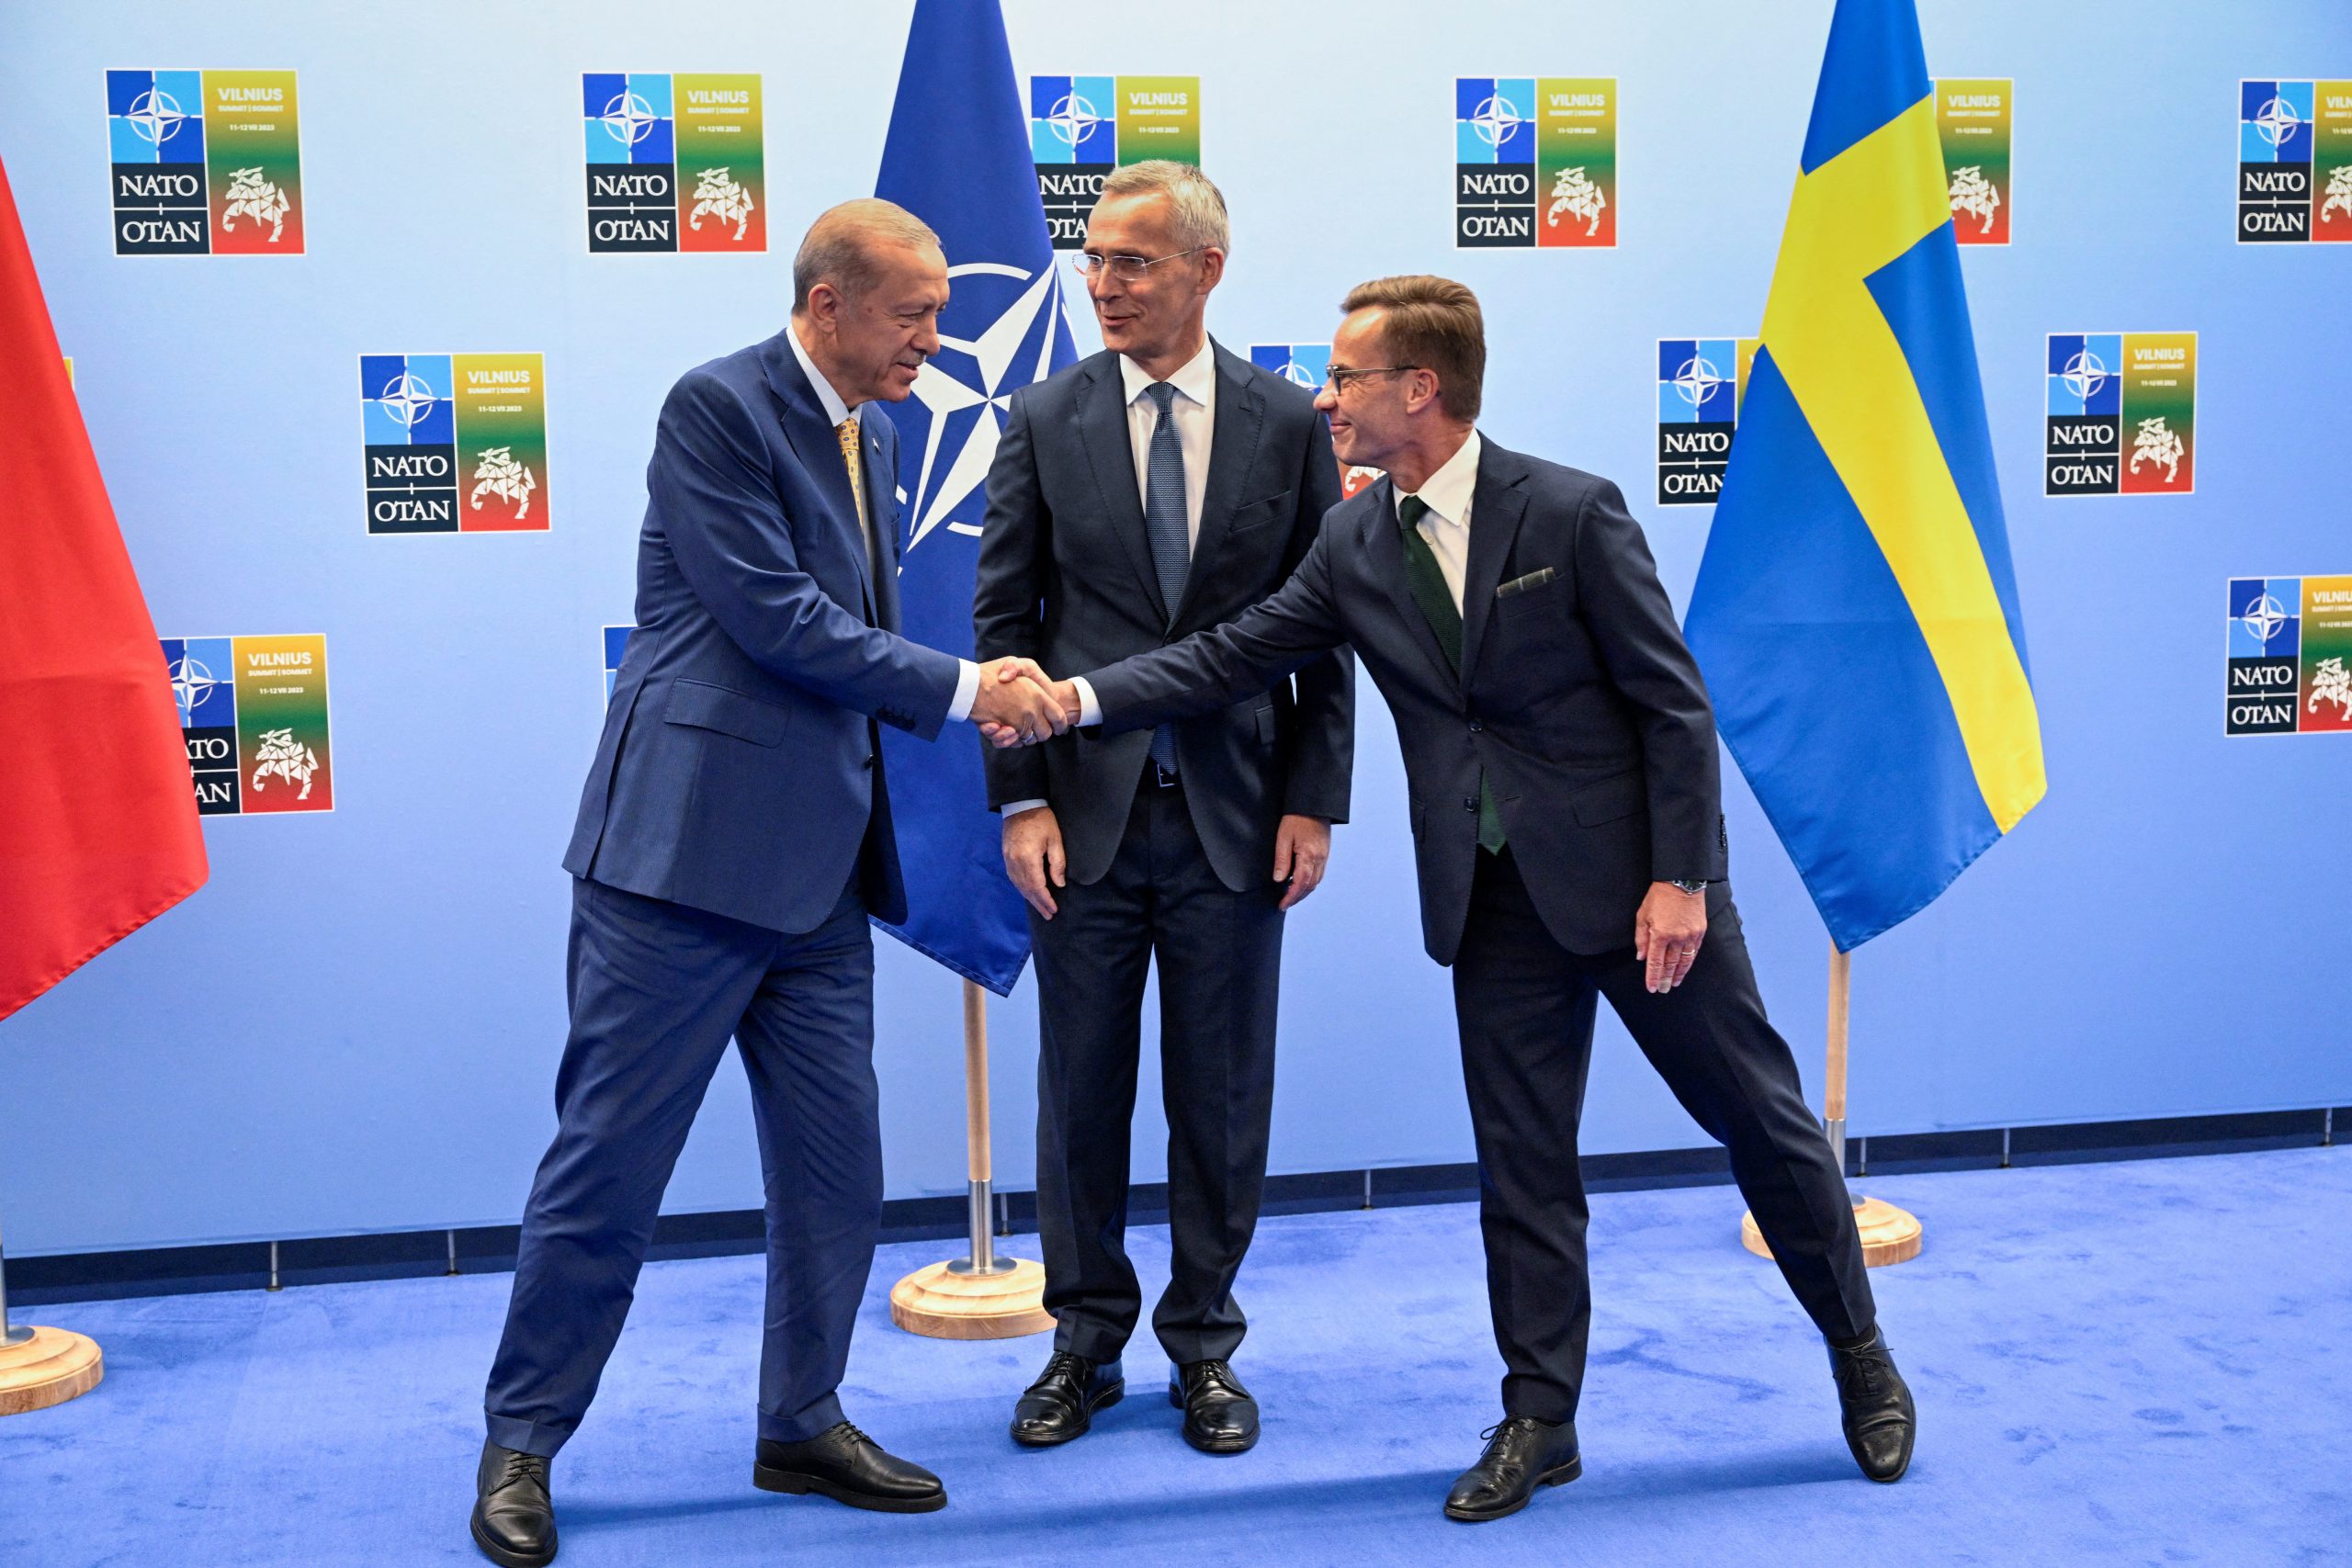 Il premier svedese Kristersson (a destra) con il presidente turco Erdogan (a sinistra) e il Segretario Generale della NATO Stoltenberg (al centro).